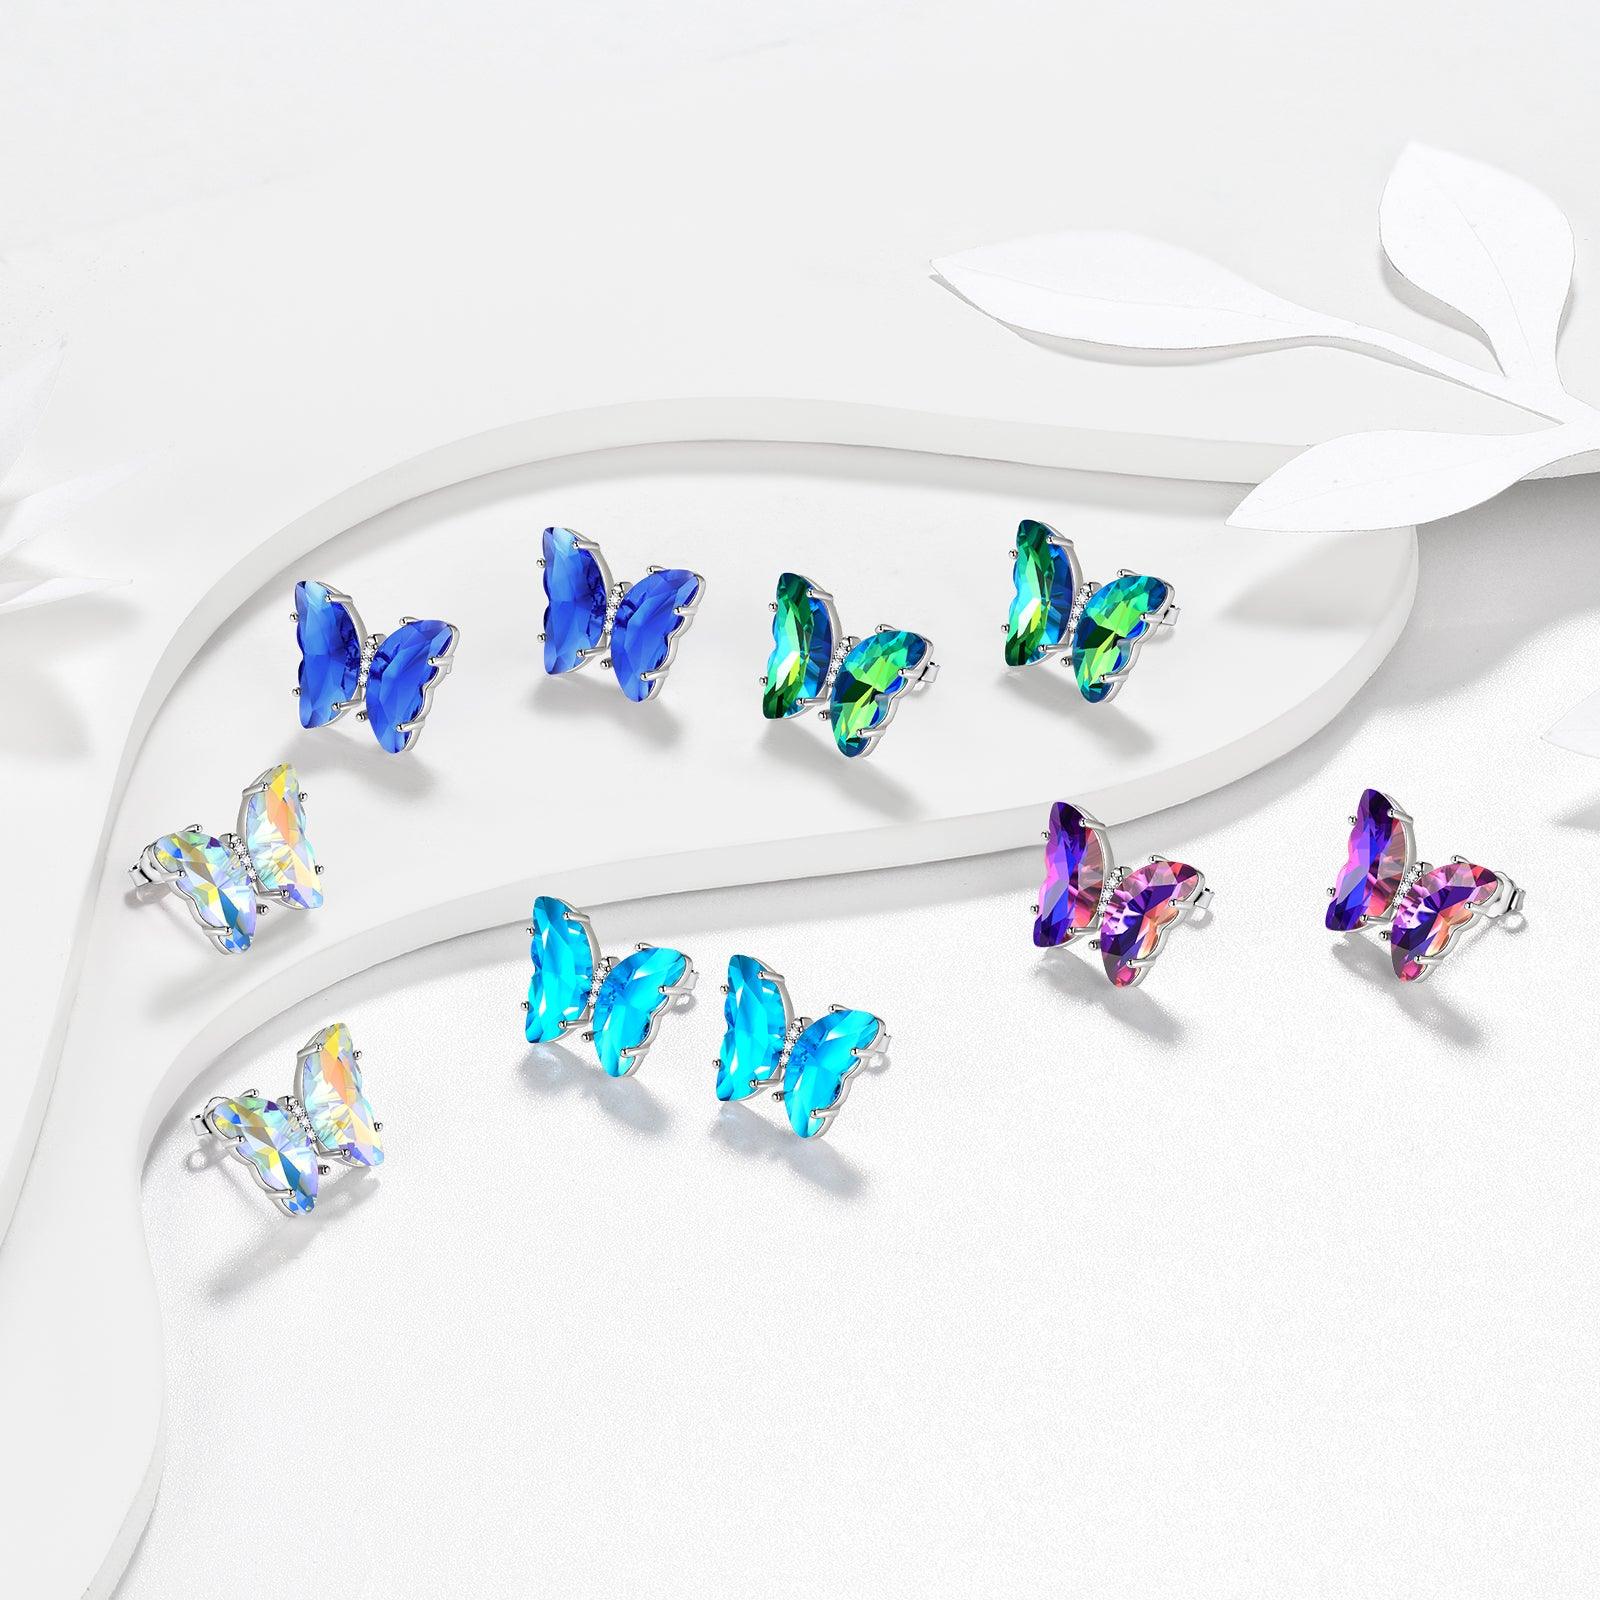 Blue Butterfly Earrings March Aquamarine Birthstone - Earrings - Aurora Tears